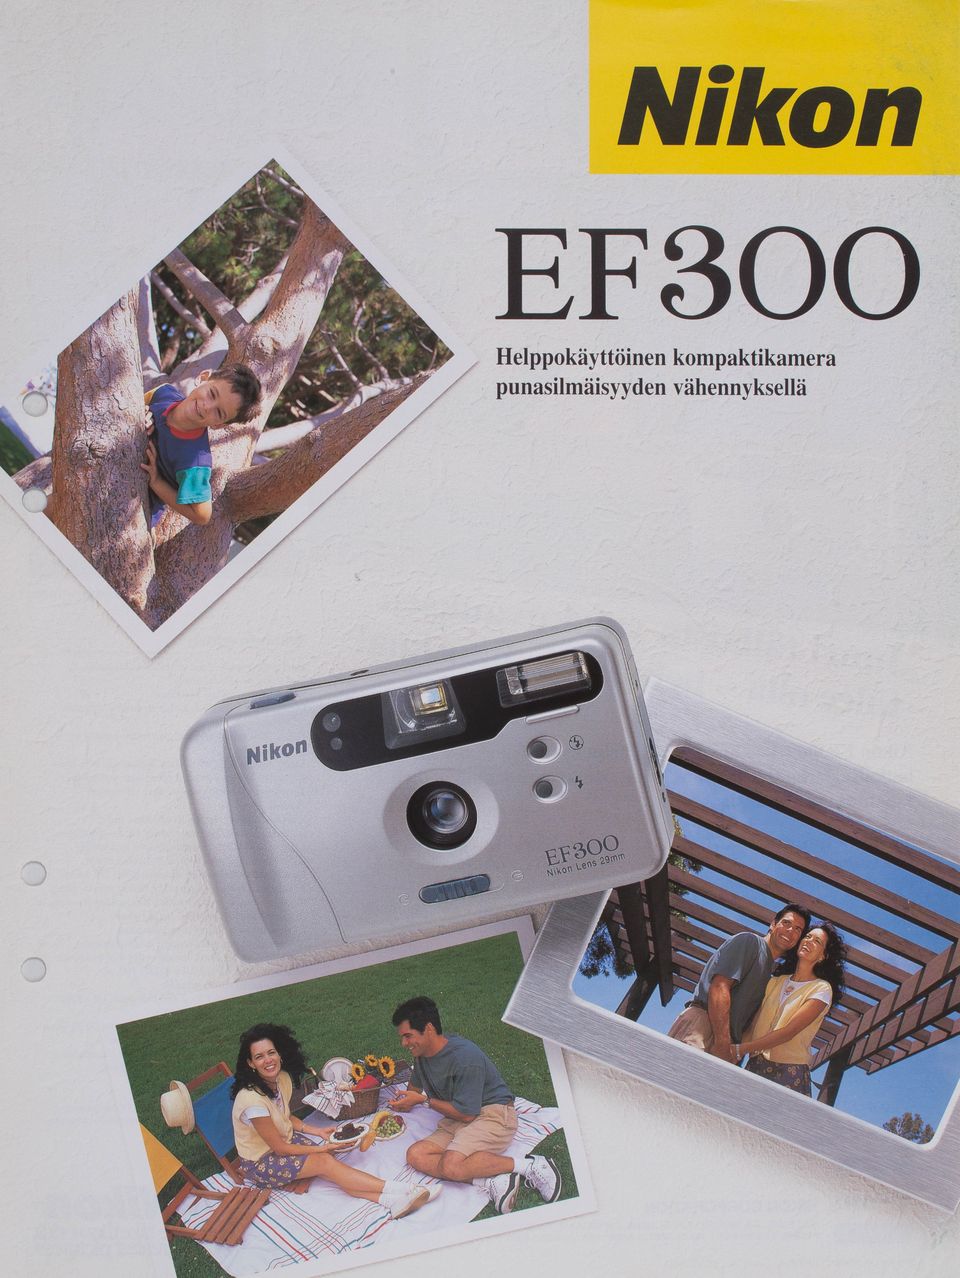 Nikon EF300